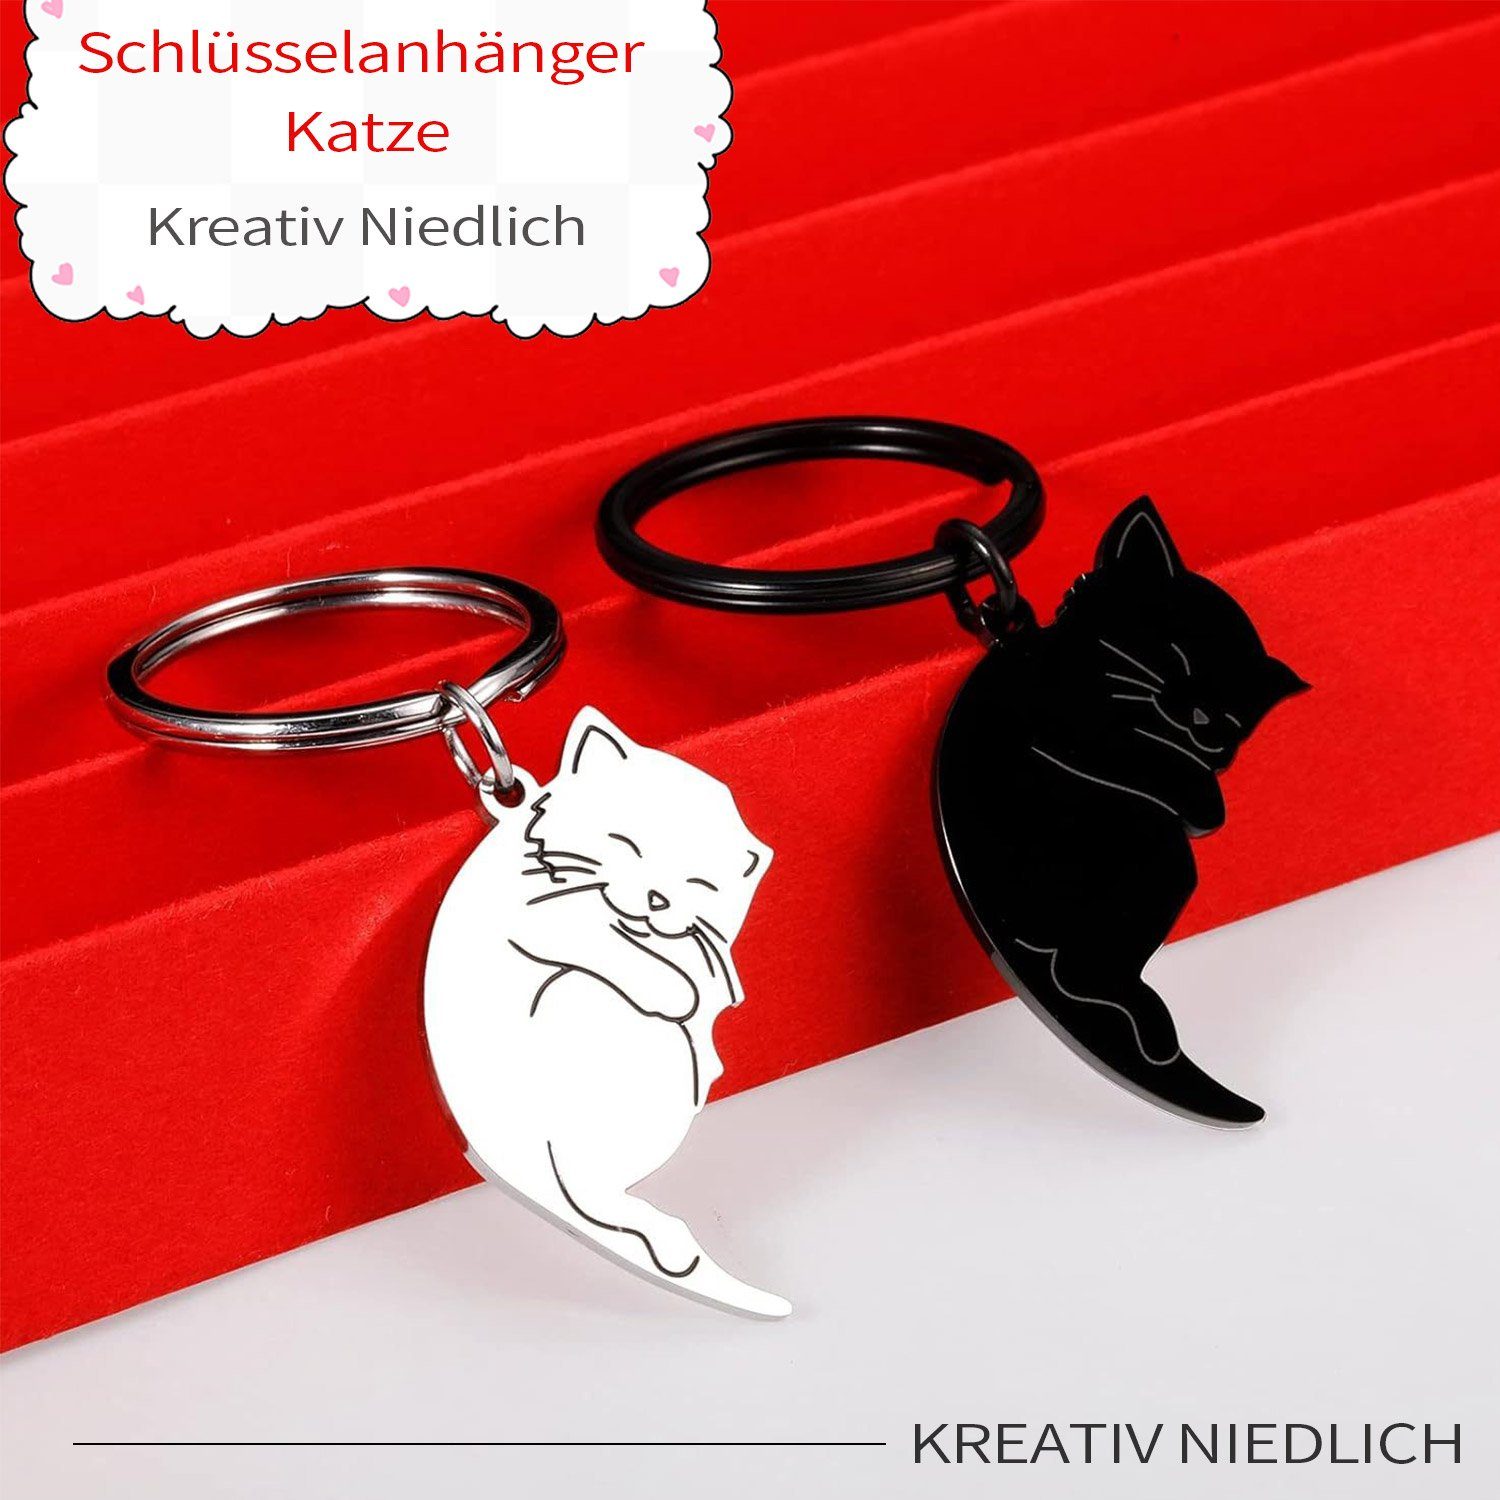 MAGICSHE Schlüsselanhänger Pärchen Geschenk Niedliche Stahlfarbe Katze